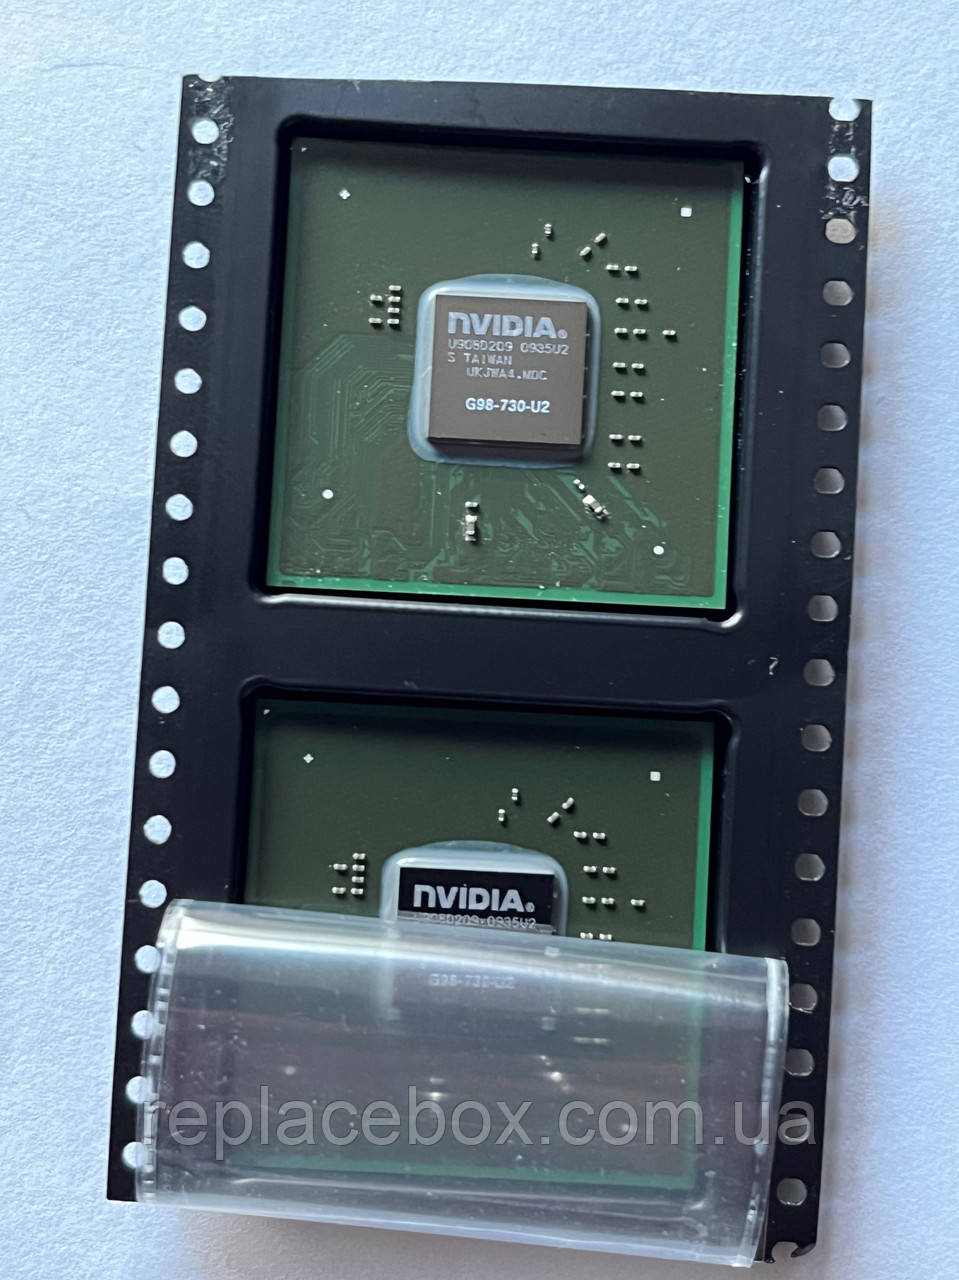 Відеочіп мікросхема G98-730-U2 nVIDIA GeForce 9300M GS до ноутбука новий оригінал